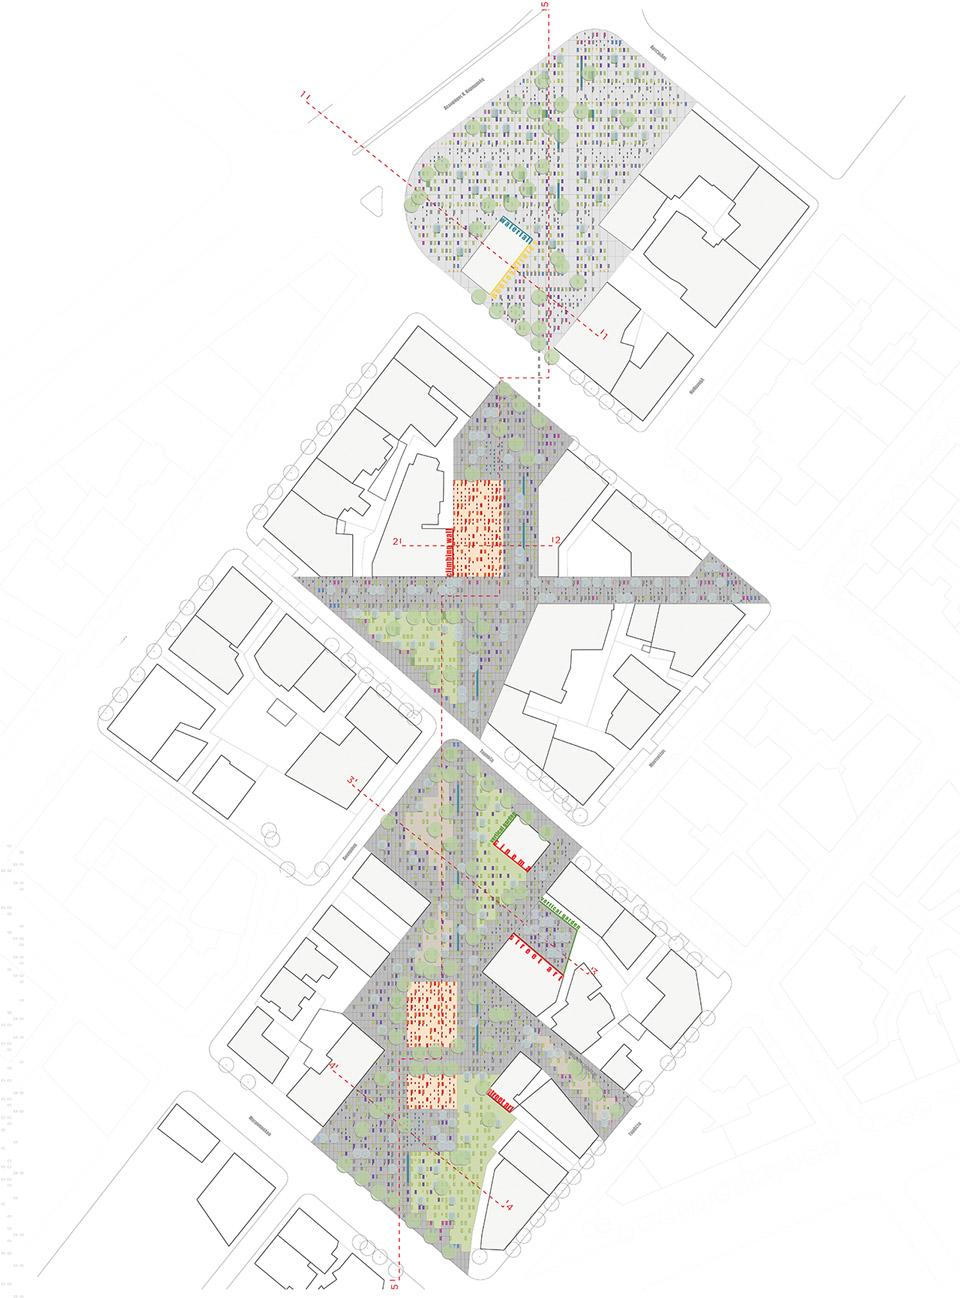 Urban-Threads-Polytopon-Architecture-Studio-plan